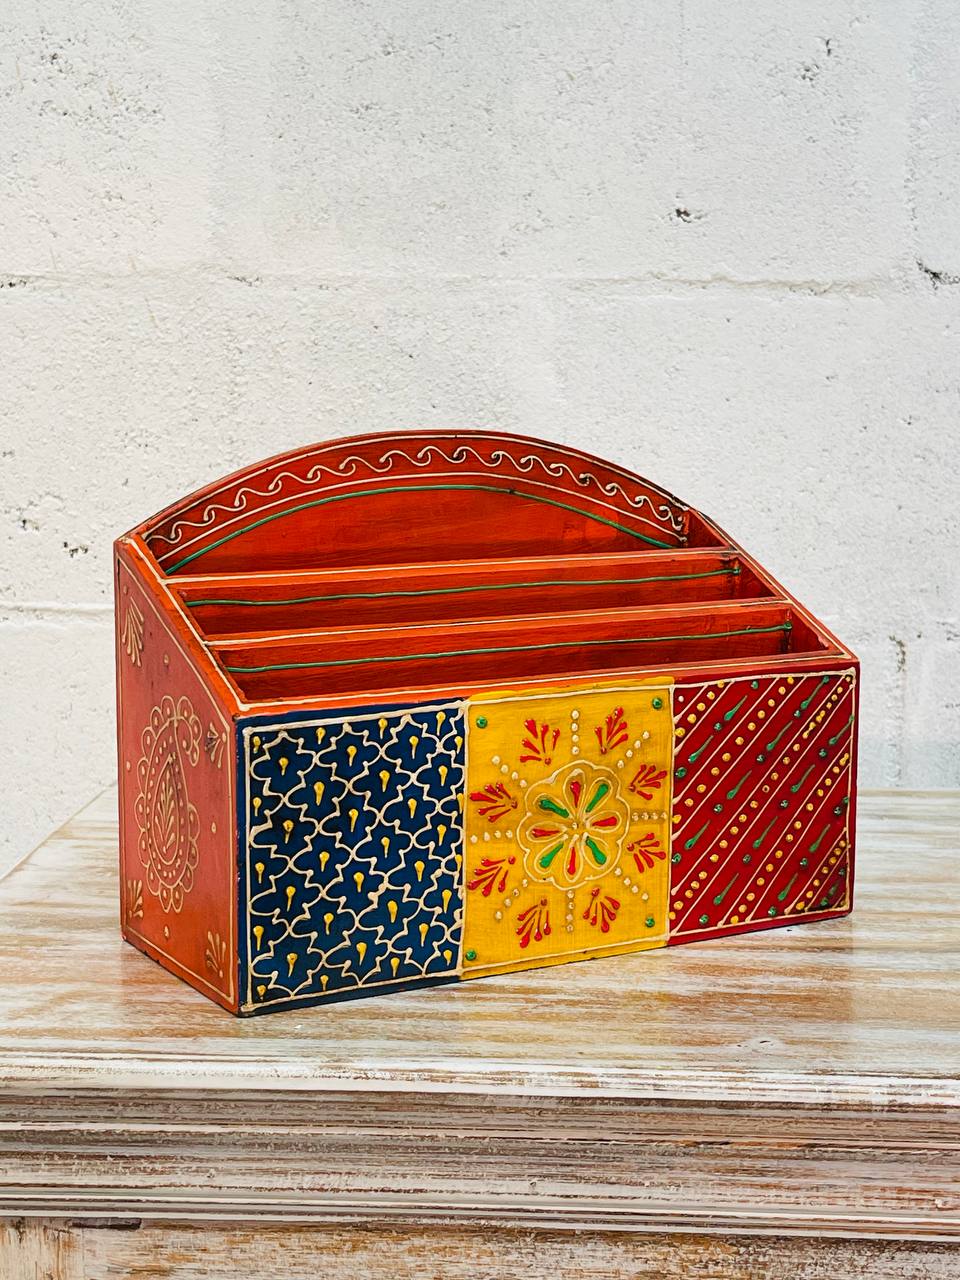 Caja Porta Revistas "Arte en Madera" - Tallada y Pintada a Mano con 3 Compartimentos y Diseños Exquisitos